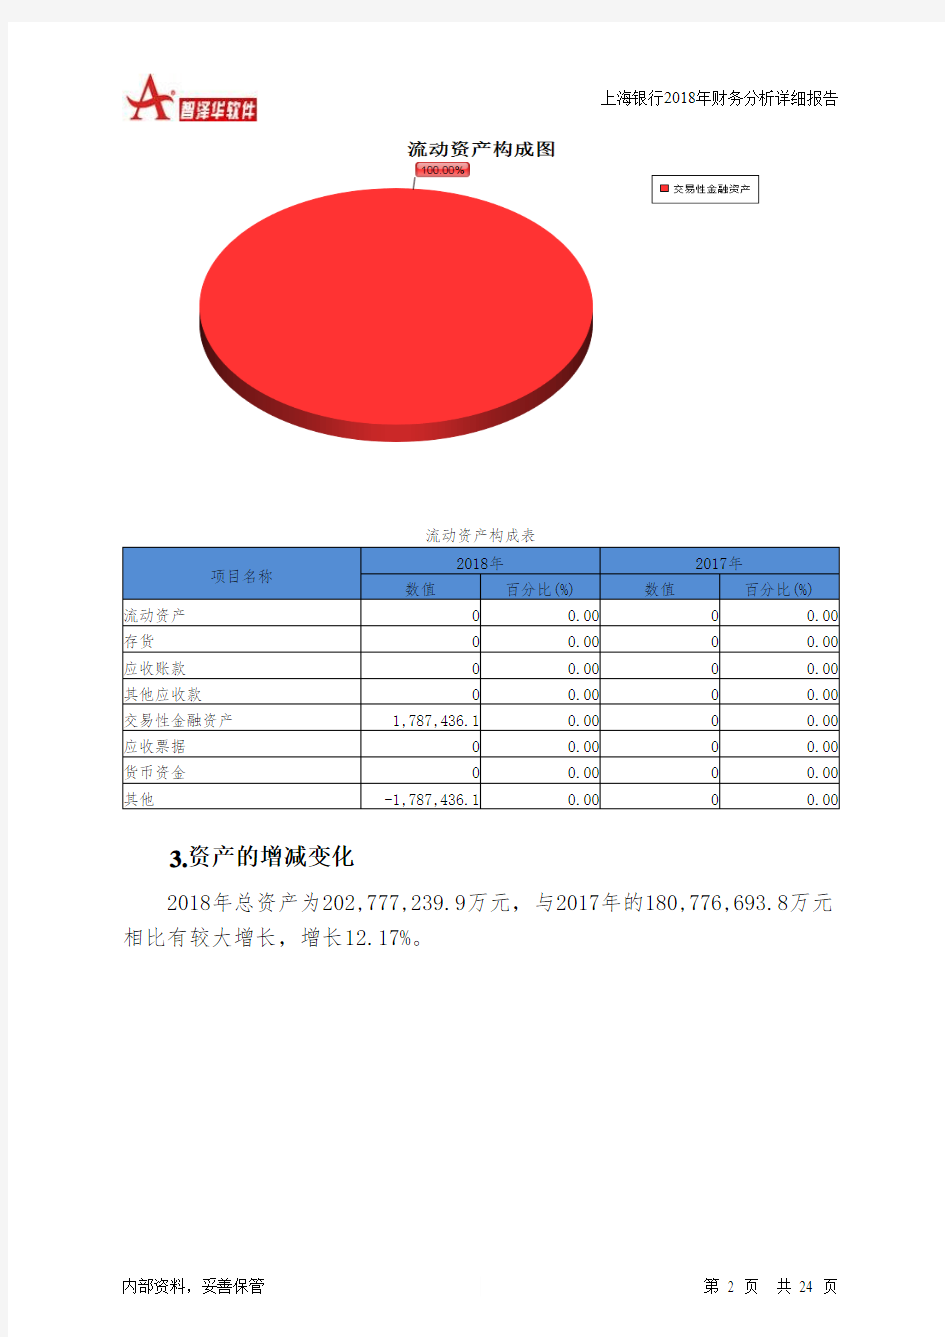 上海银行2018年财务分析详细报告-智泽华